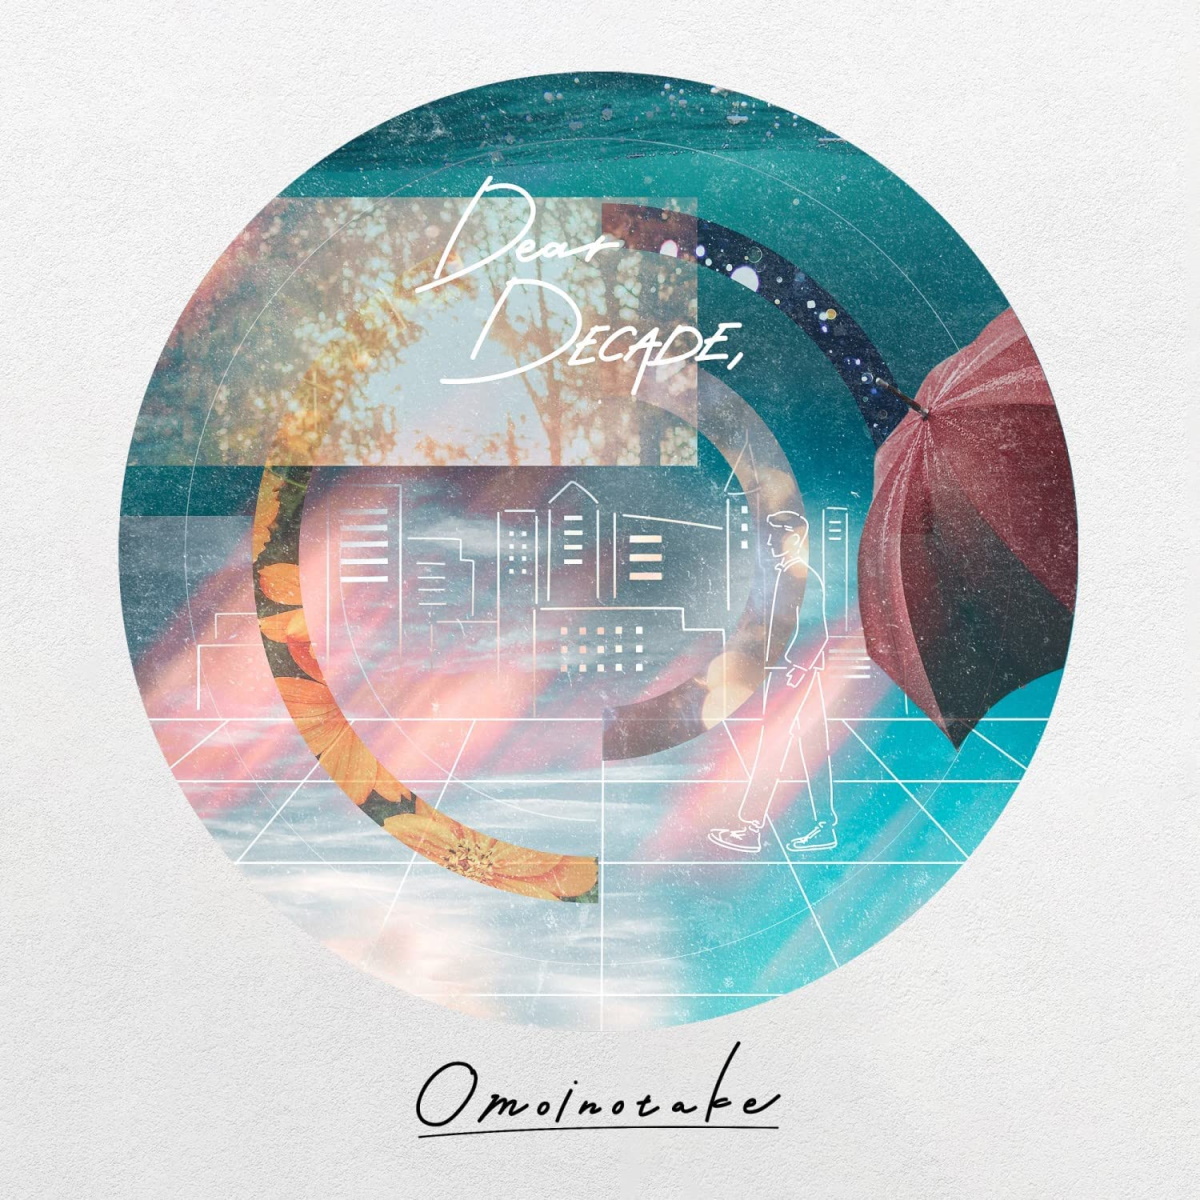 『Omoinotake - この夜のロマンス』収録の『Dear DECADE,』ジャケット